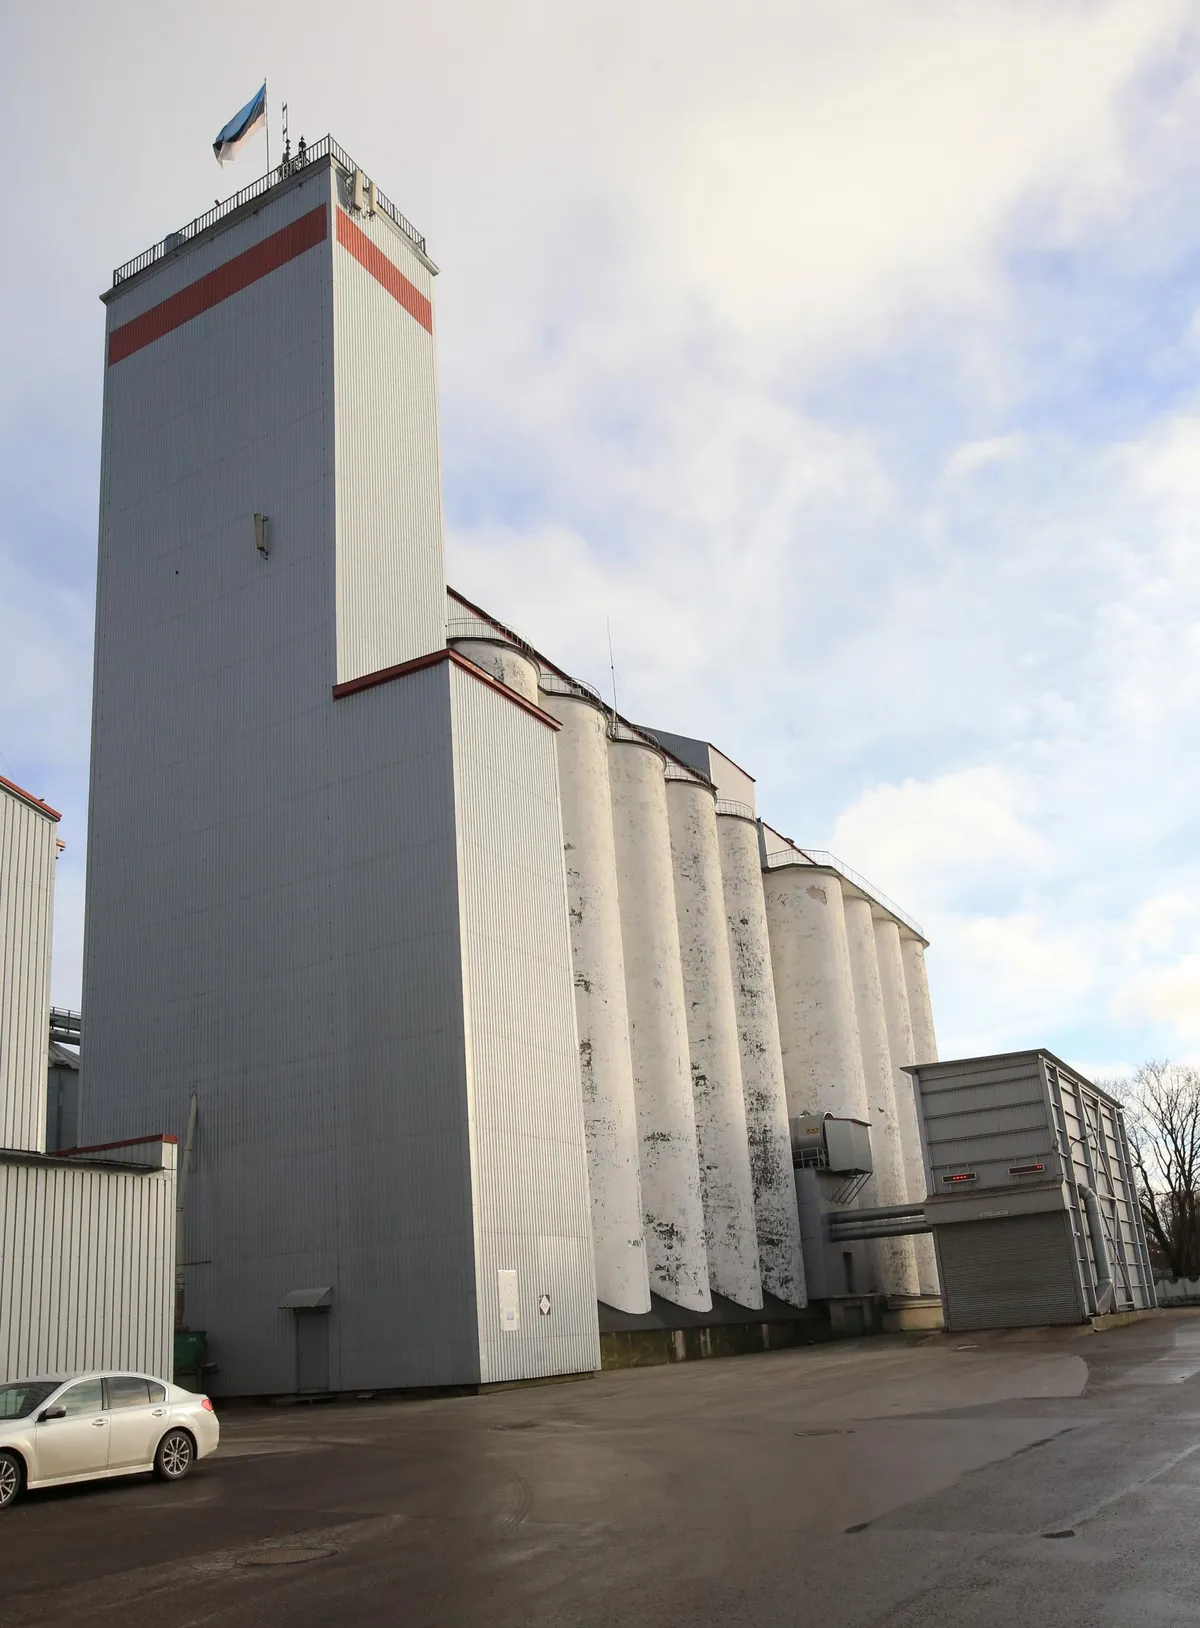 ASi Tartu Mill elevaator 2020. aastal, mil Komendandi ehitatud trepitorni asemele on ehitatud uus ning elevaatori teises otsas hiljem juurde ehitatud 12 viljasilo. Insener Komendandi viljasilod - viis tükki kolmes reas - keskel.